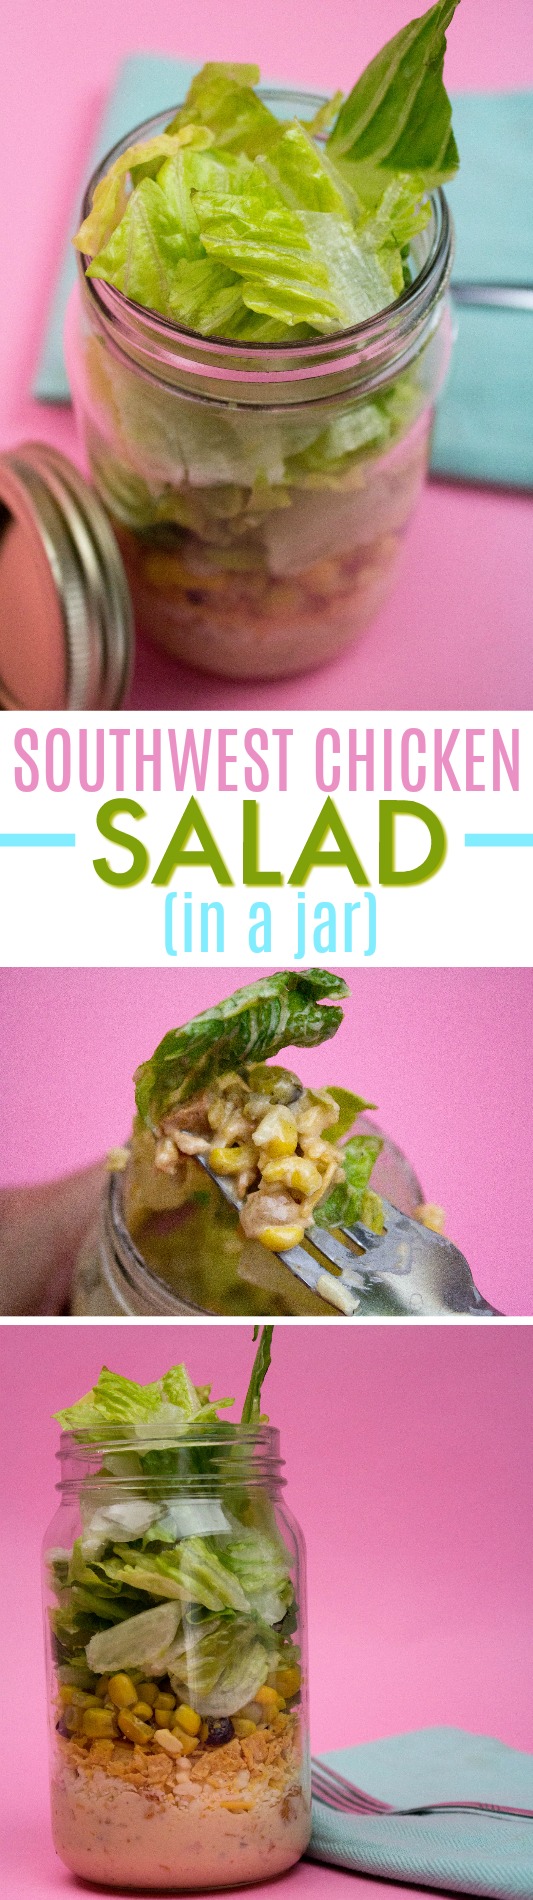 salad in a jar, diy salad, easy salad recipe, easy salad ideas, easy summer salad recipes